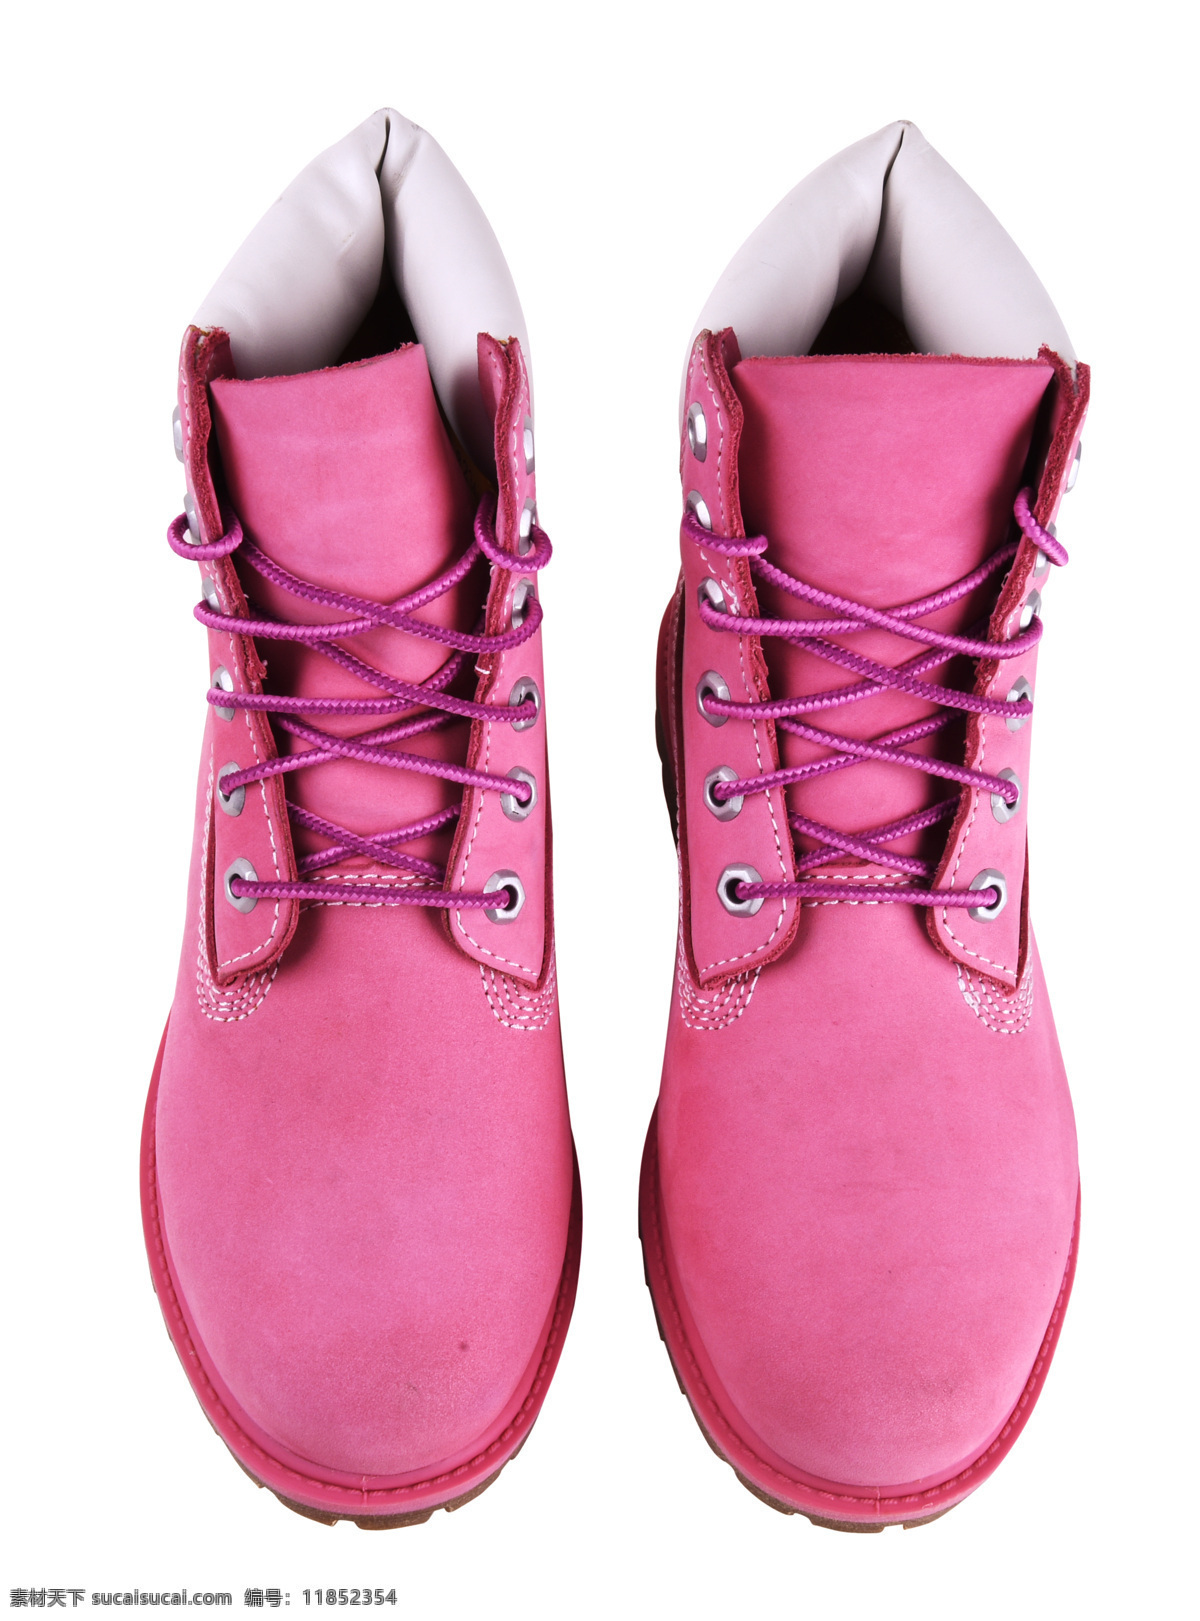 粉红色 靴子 工装靴 耐磨靴 气质靴 女子工装靴 生活百科 家居生活